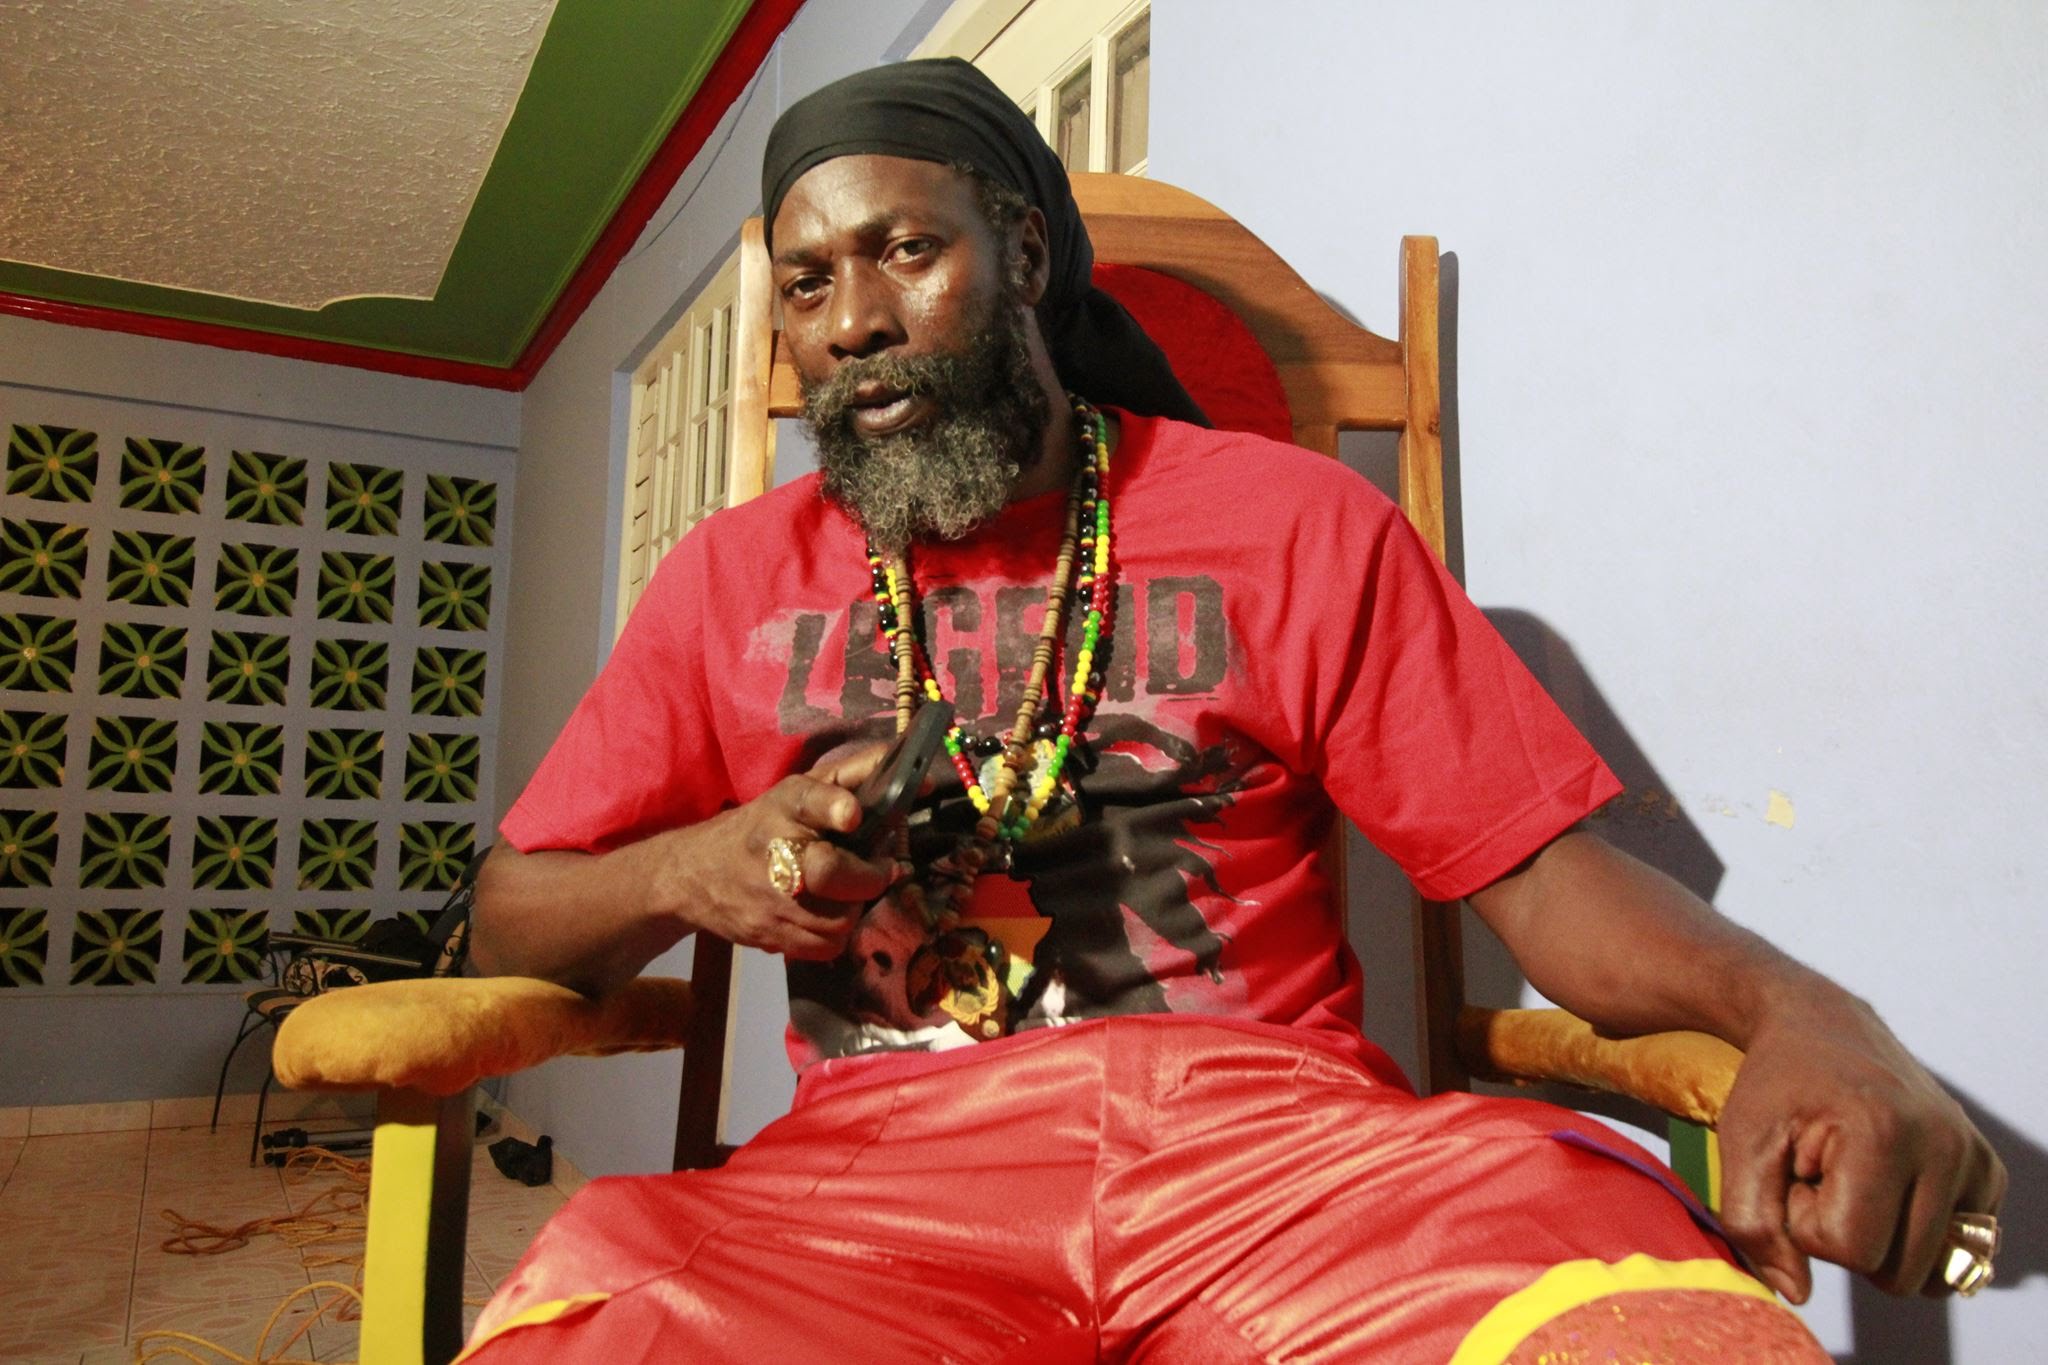 Le chanteur jamaïcain Capleton accusé de viol